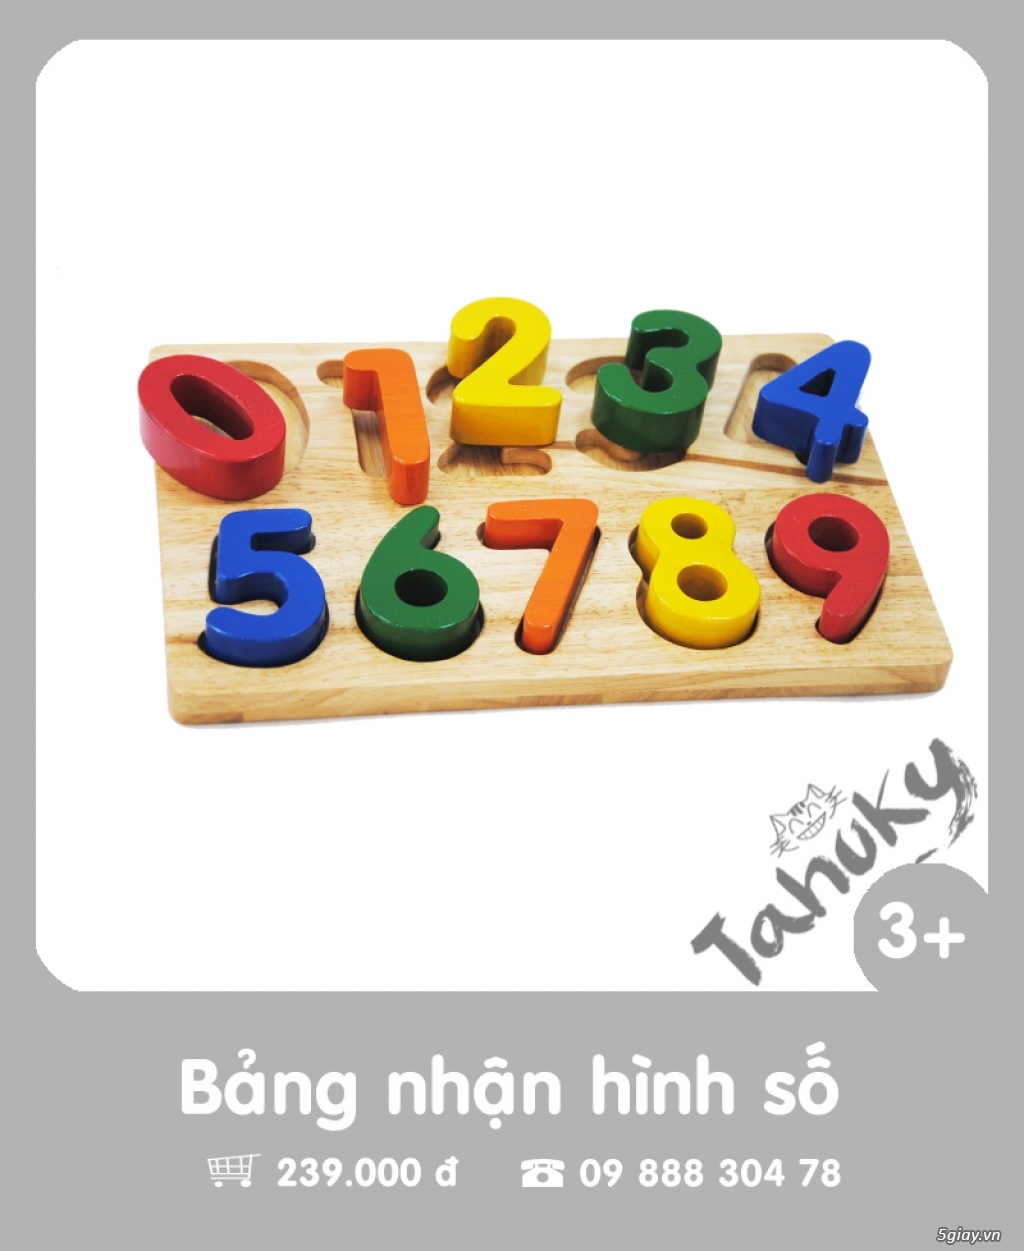 Đồ chơi gỗ an toàn Tahuky (dành cho bé từ 3-5 tuổi) - 27